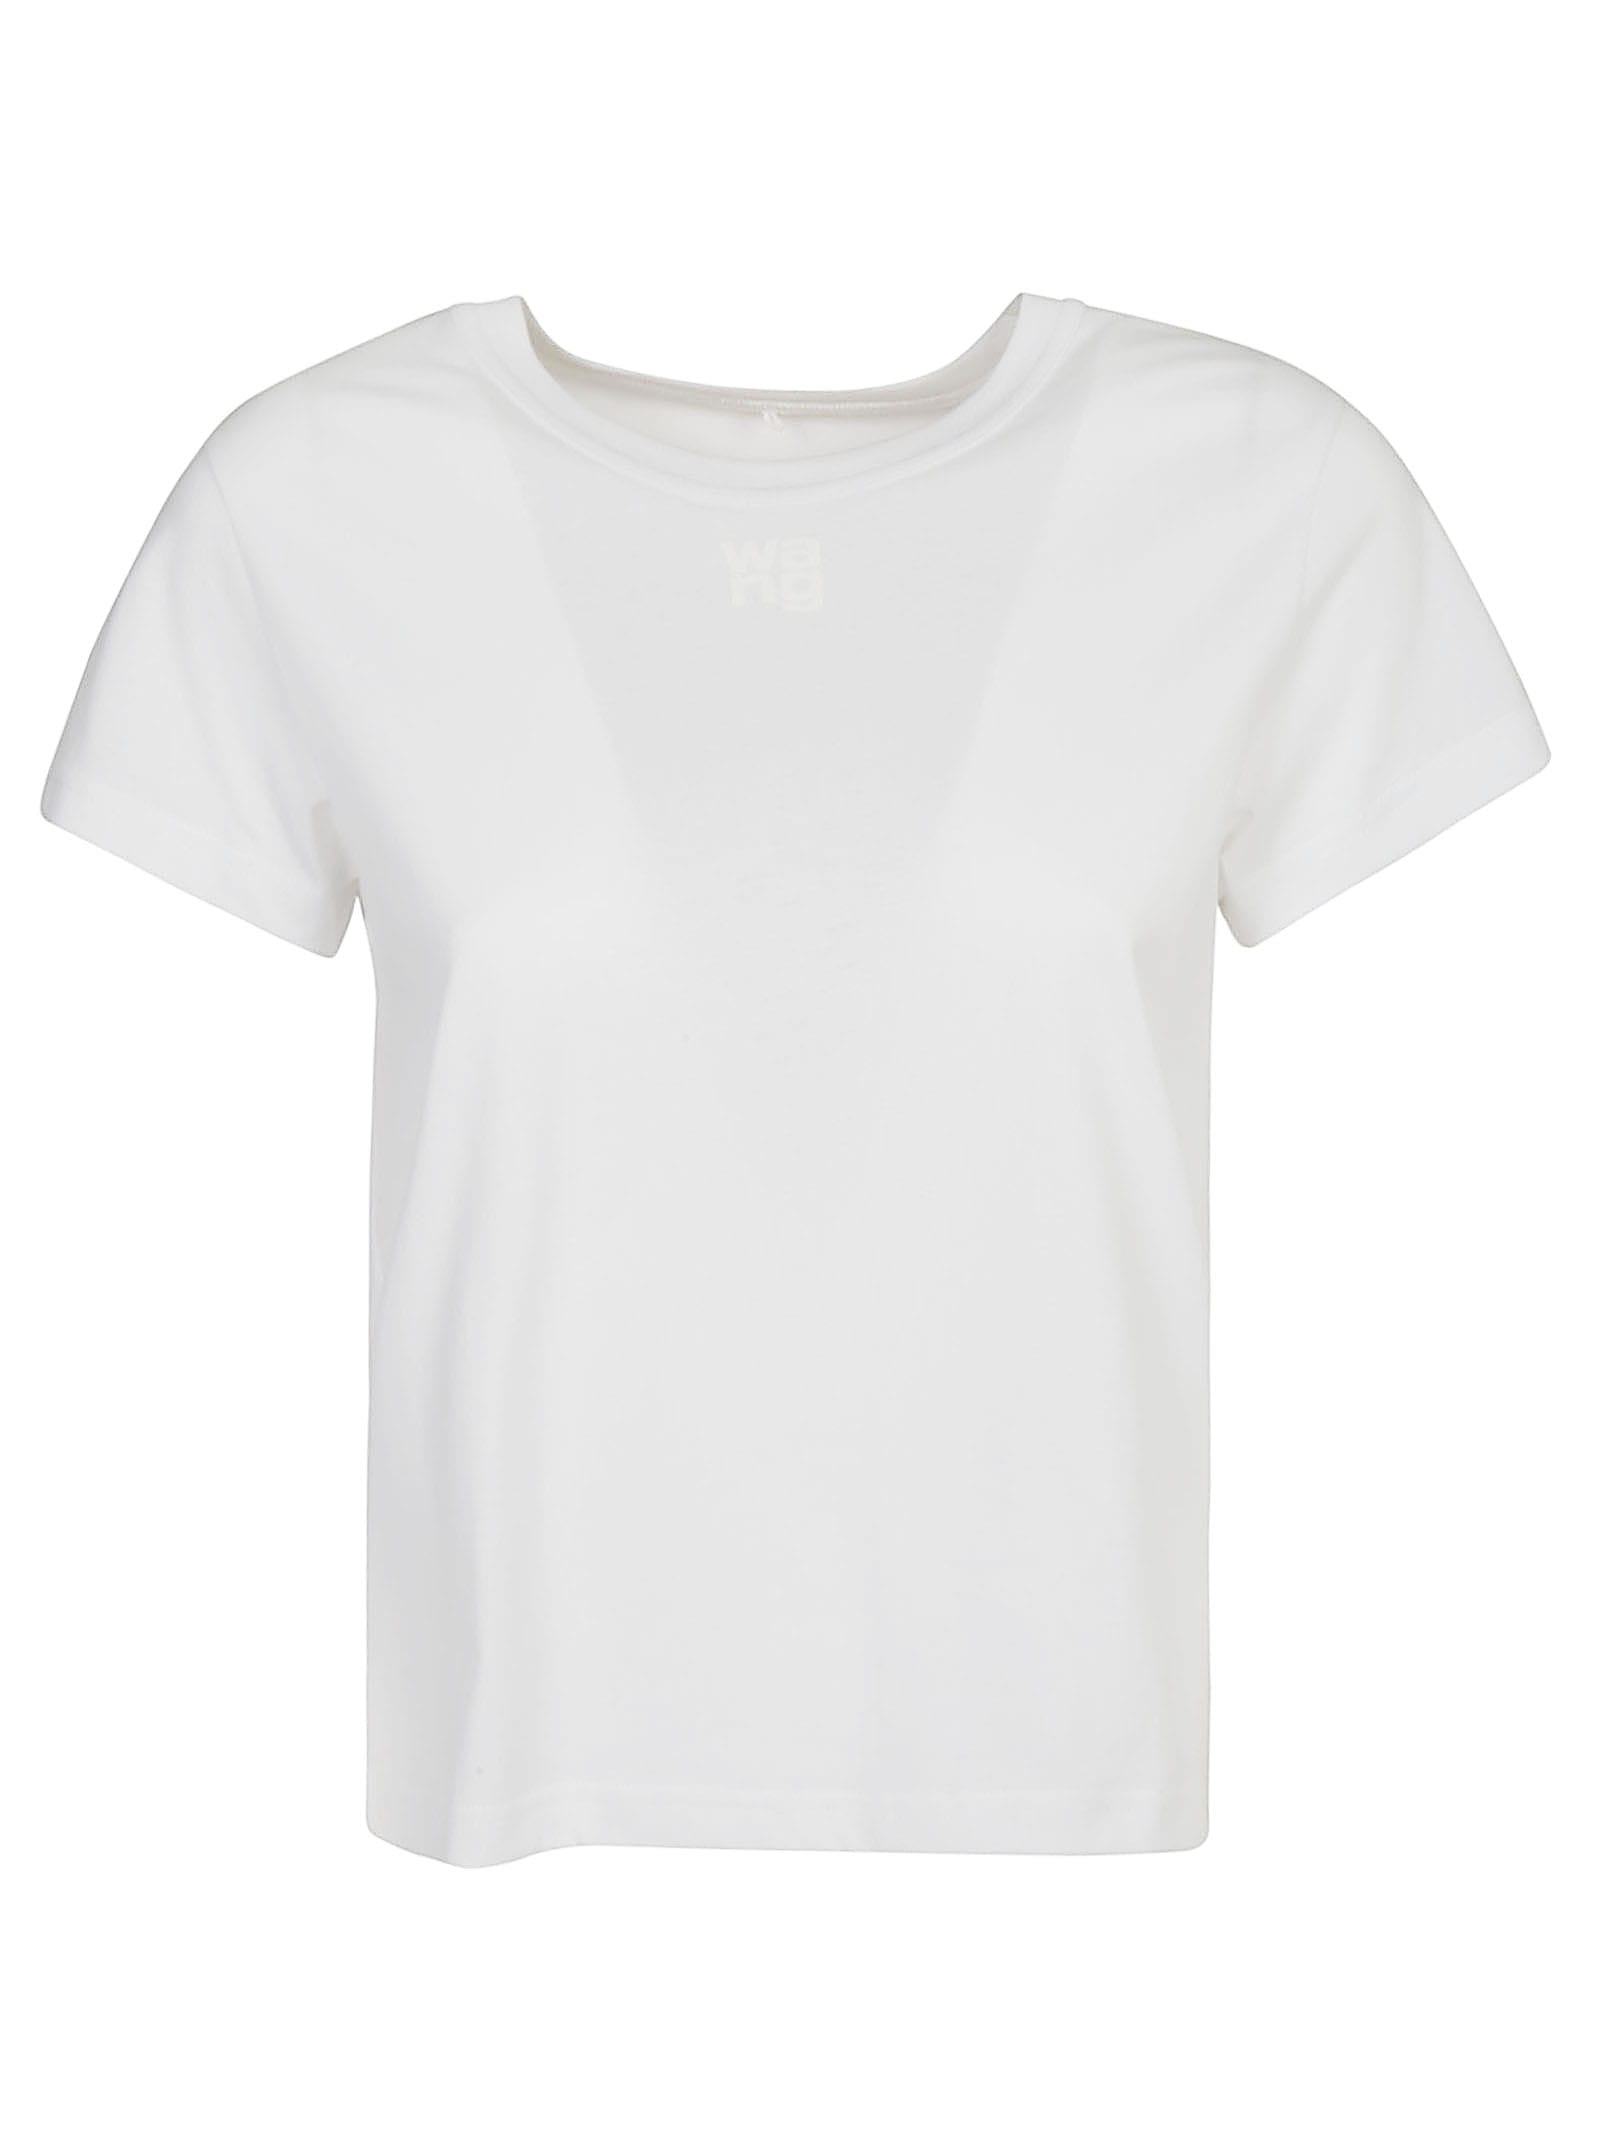 ALEXANDER WANG T-Shirts for Women | ModeSens